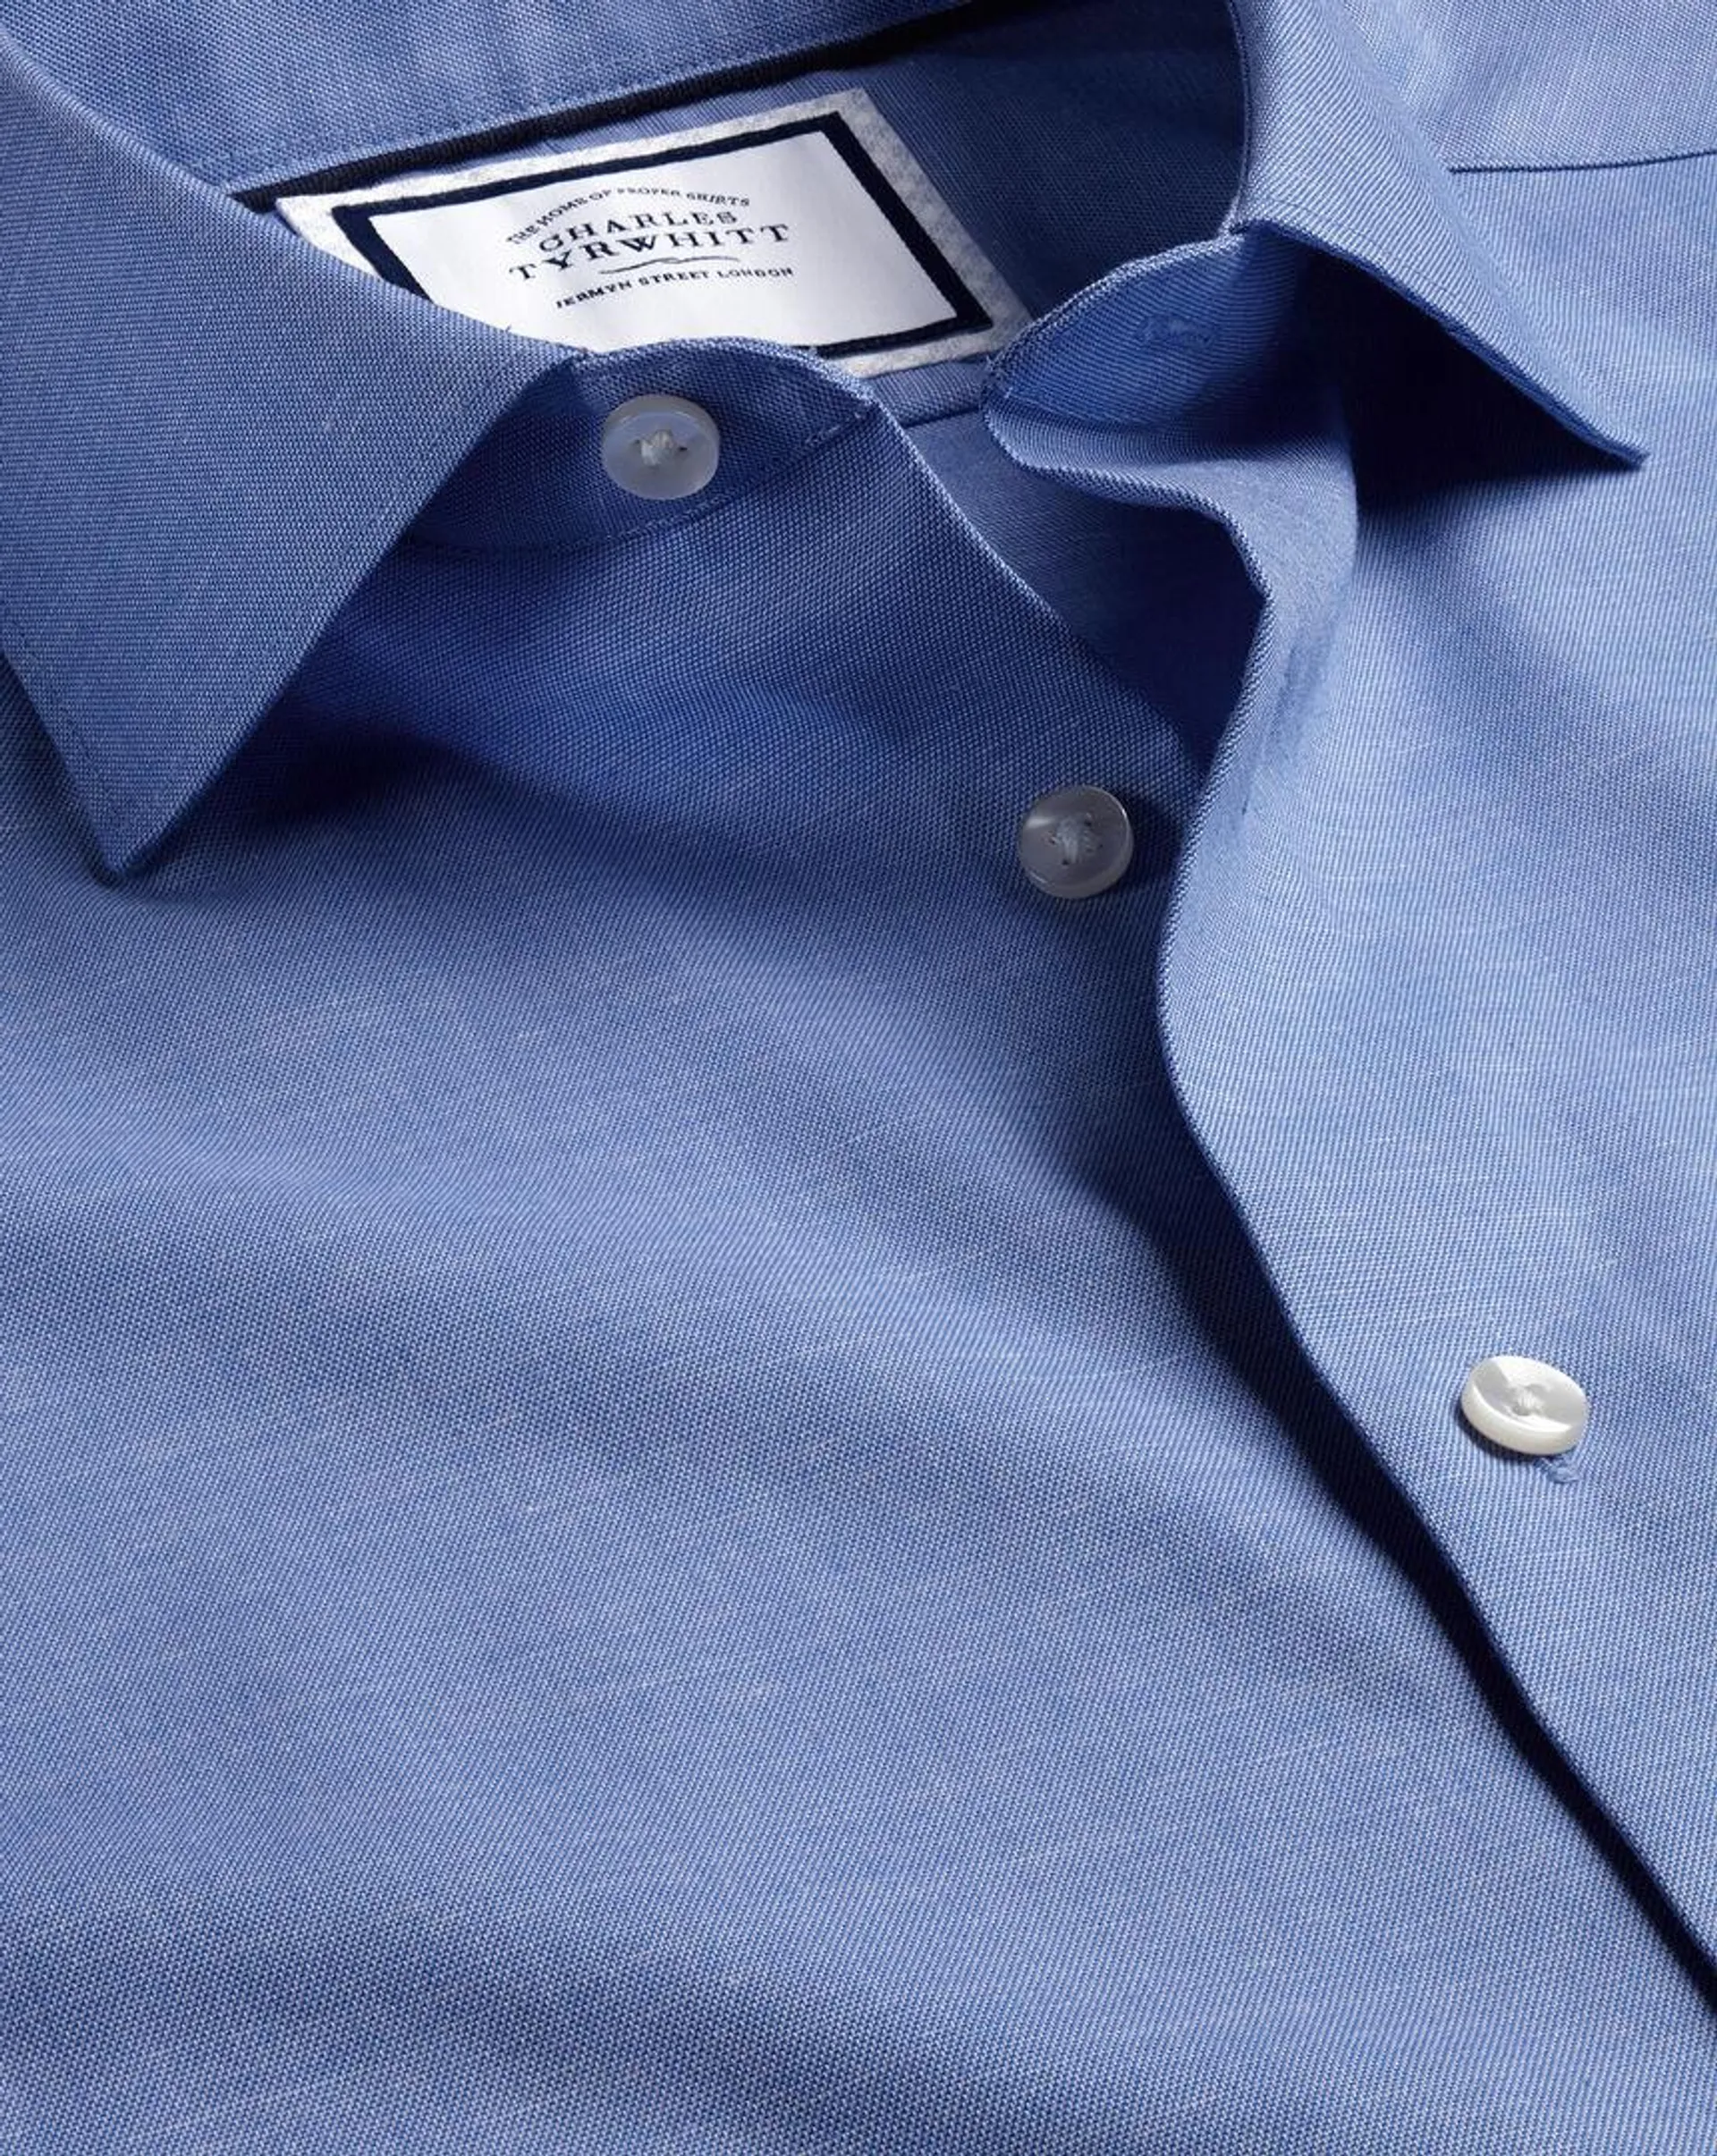 Semi-Cutaway Collar Non-Iron Cotton Linen Shirt - Cobalt Blue